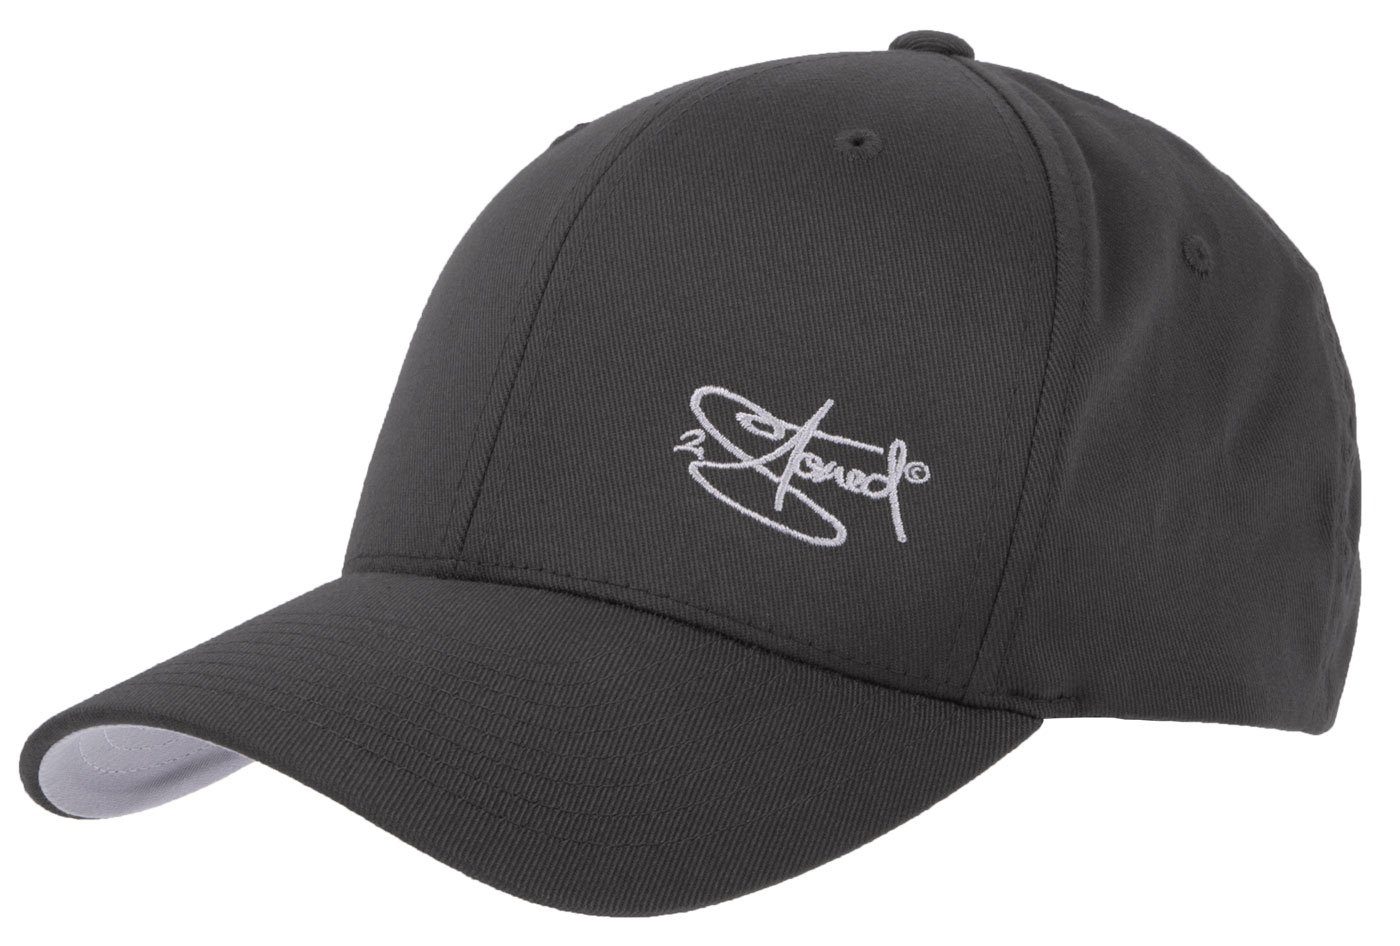 2Stoned Baseball Cap Flexfit Cap mit Stick Classic Logo für Damen, Herren und Kinder hinten geschlossen, verstärkte Front, mittleres Profil